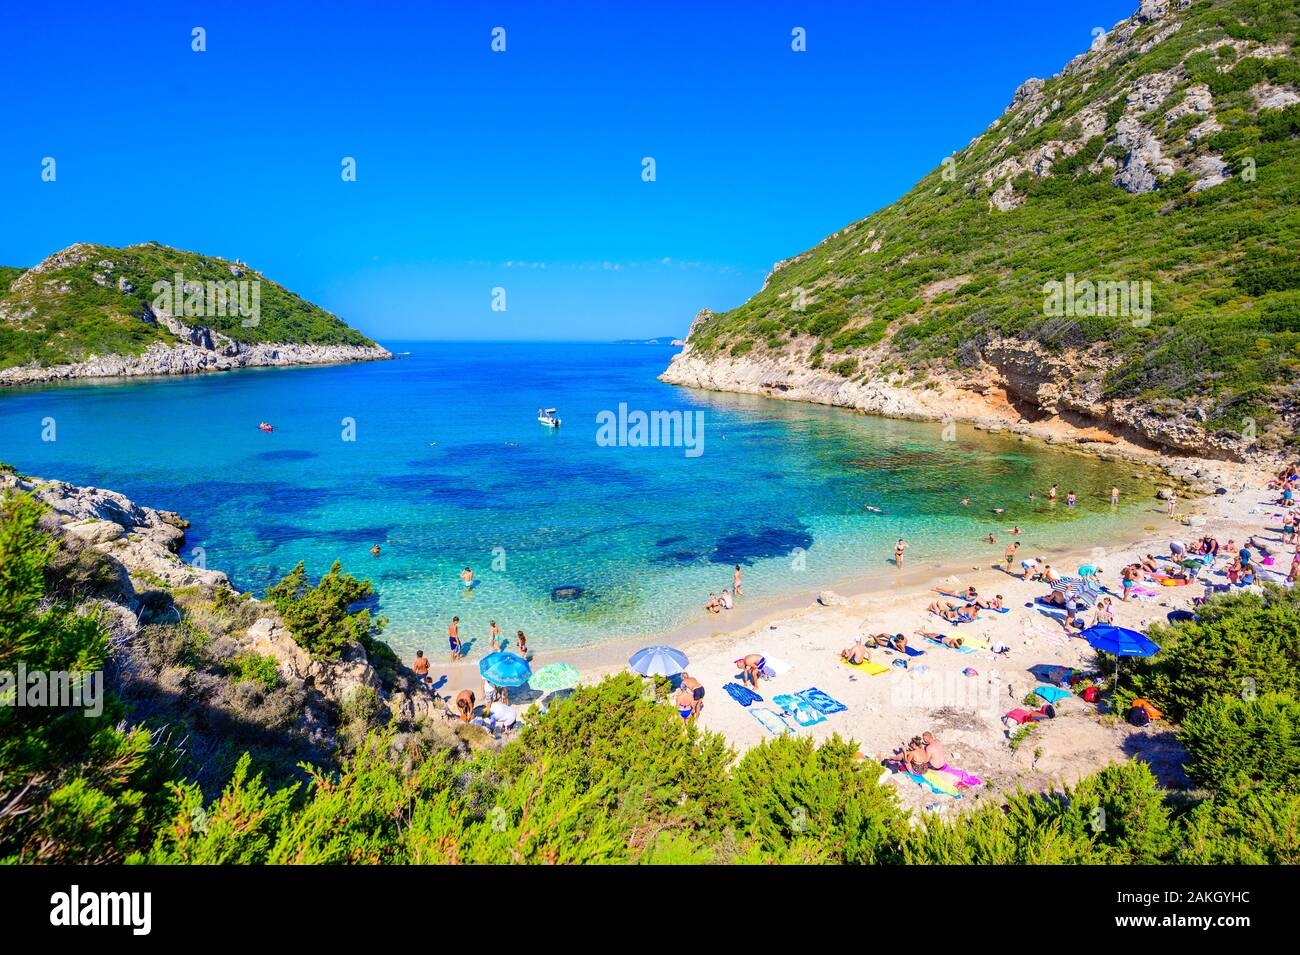 Plage de Porto à Afionas Timoni est un paradis avec plage double clair comme de l'eau azur à Corfou, Double Bay, île Ionienne, Grèce, Europe Banque D'Images